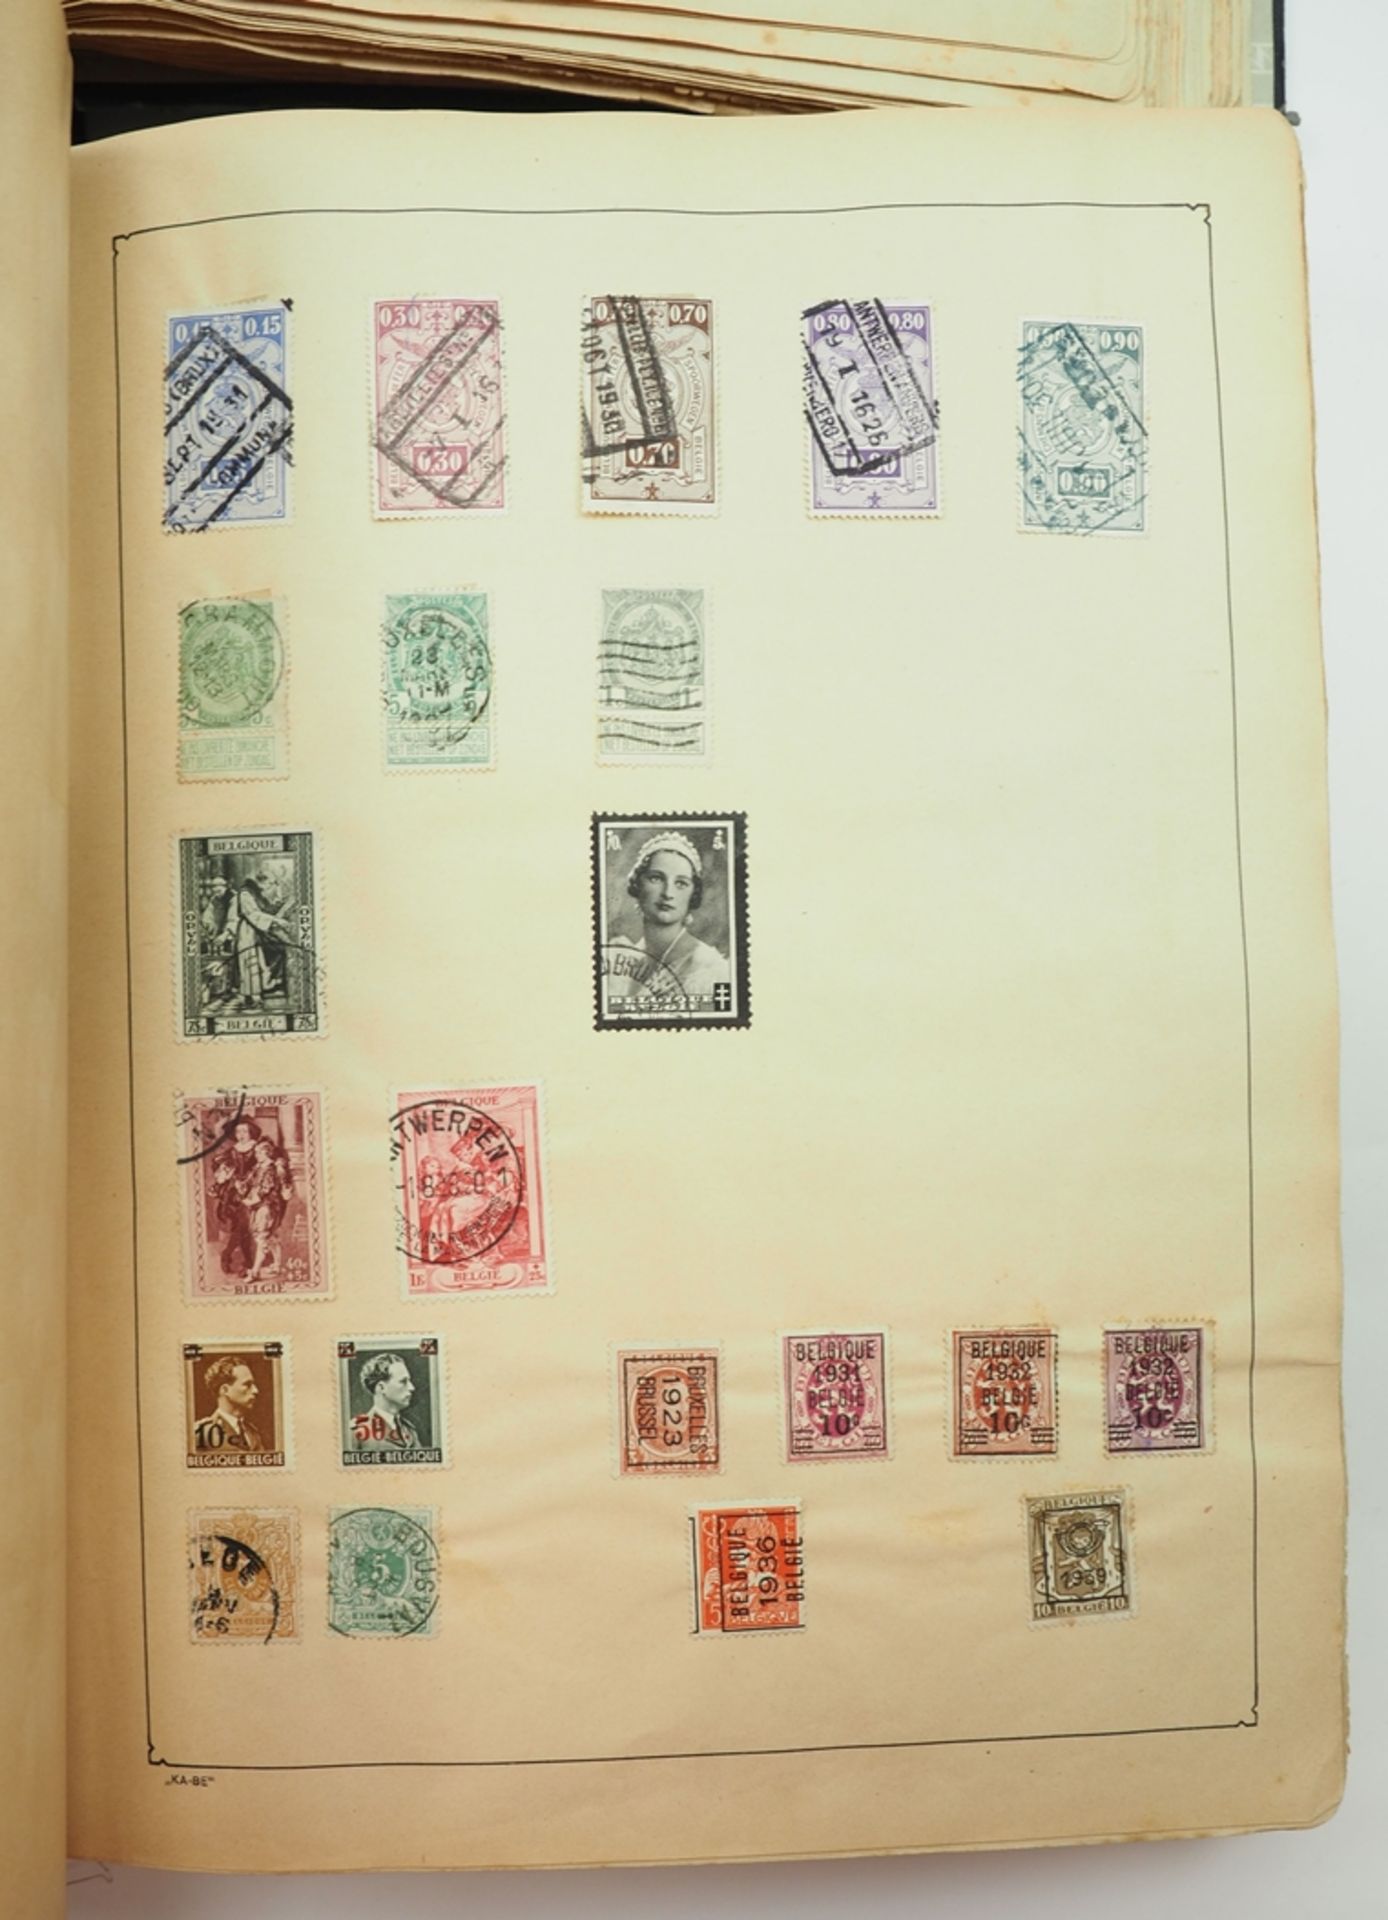 Briefmarken und Ganzsachen Sammlung Deutschland und International - 2 KA BE Alben. - Bild 3 aus 5